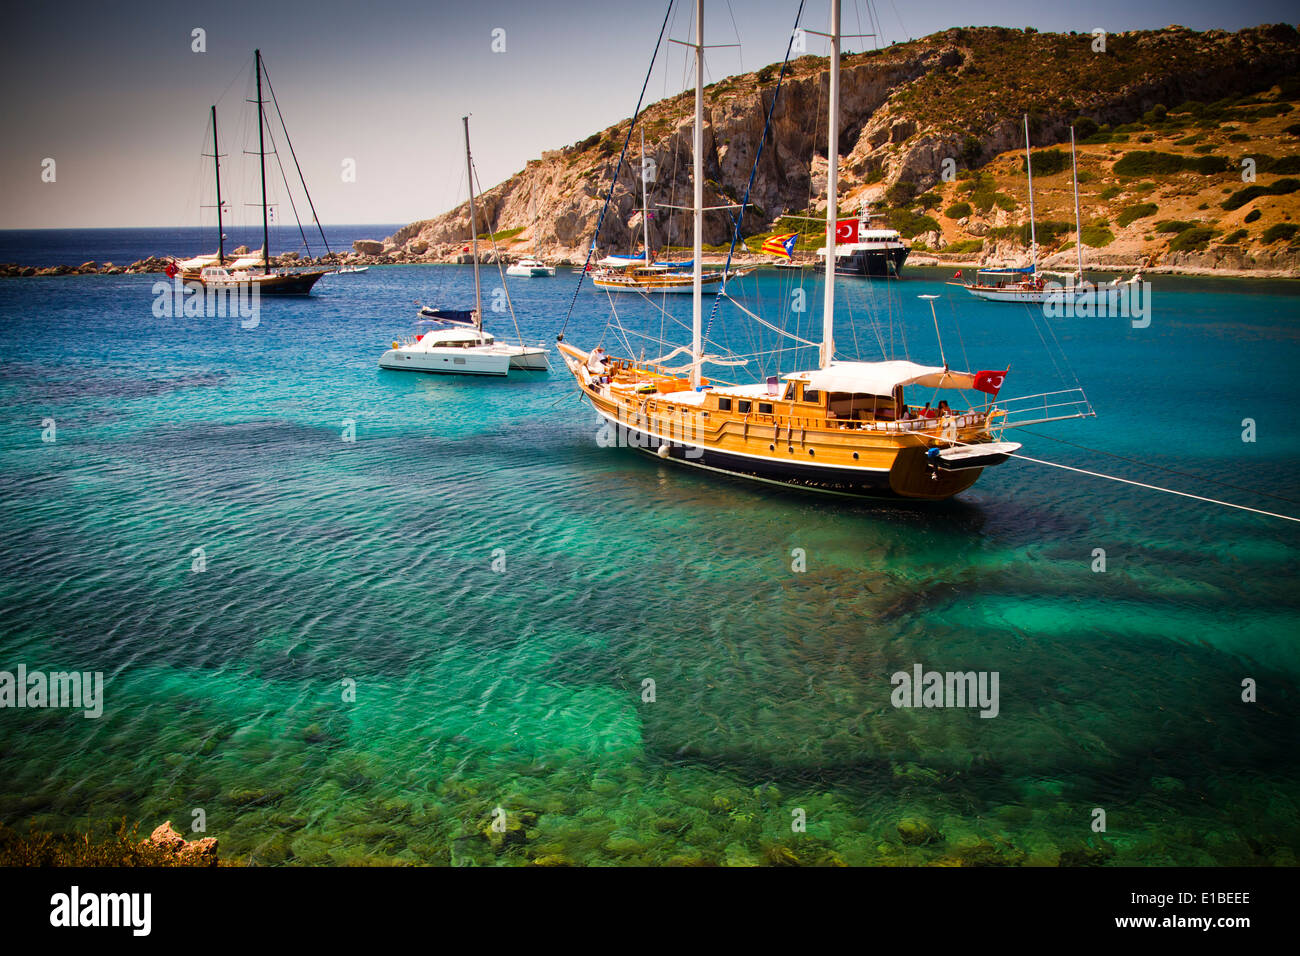 Bay and sailing ships near Knidos ancient Greek city ruins. Datca peninsula, Mugla province, Turkey. Stock Photo